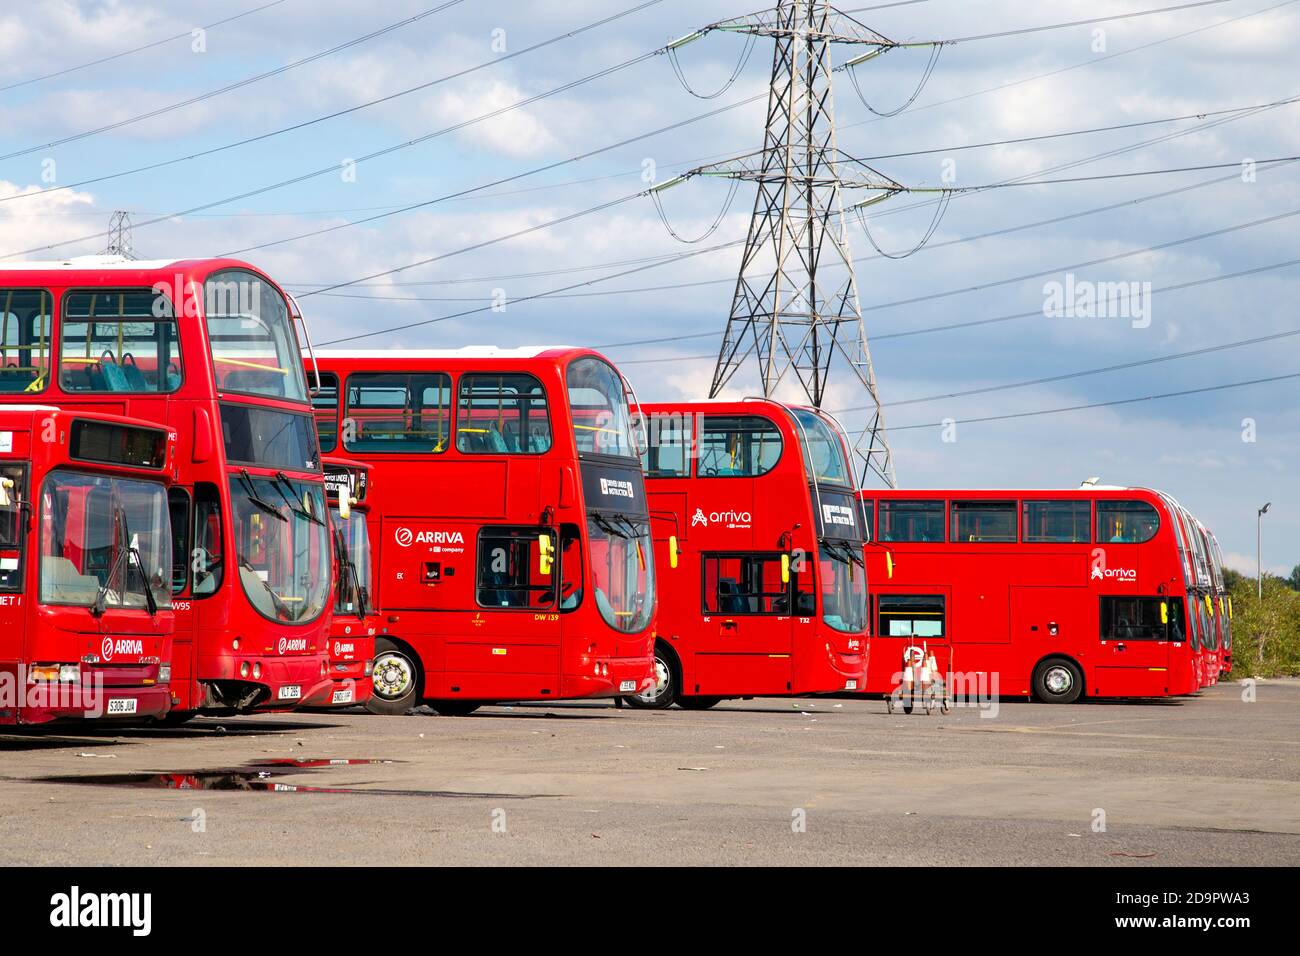 Bus rouges à impériale garés au dépôt d'autobus d'Arriva North London près du canal de navigation River Lee, Lee Valley, Londres, Royaume-Uni Banque D'Images